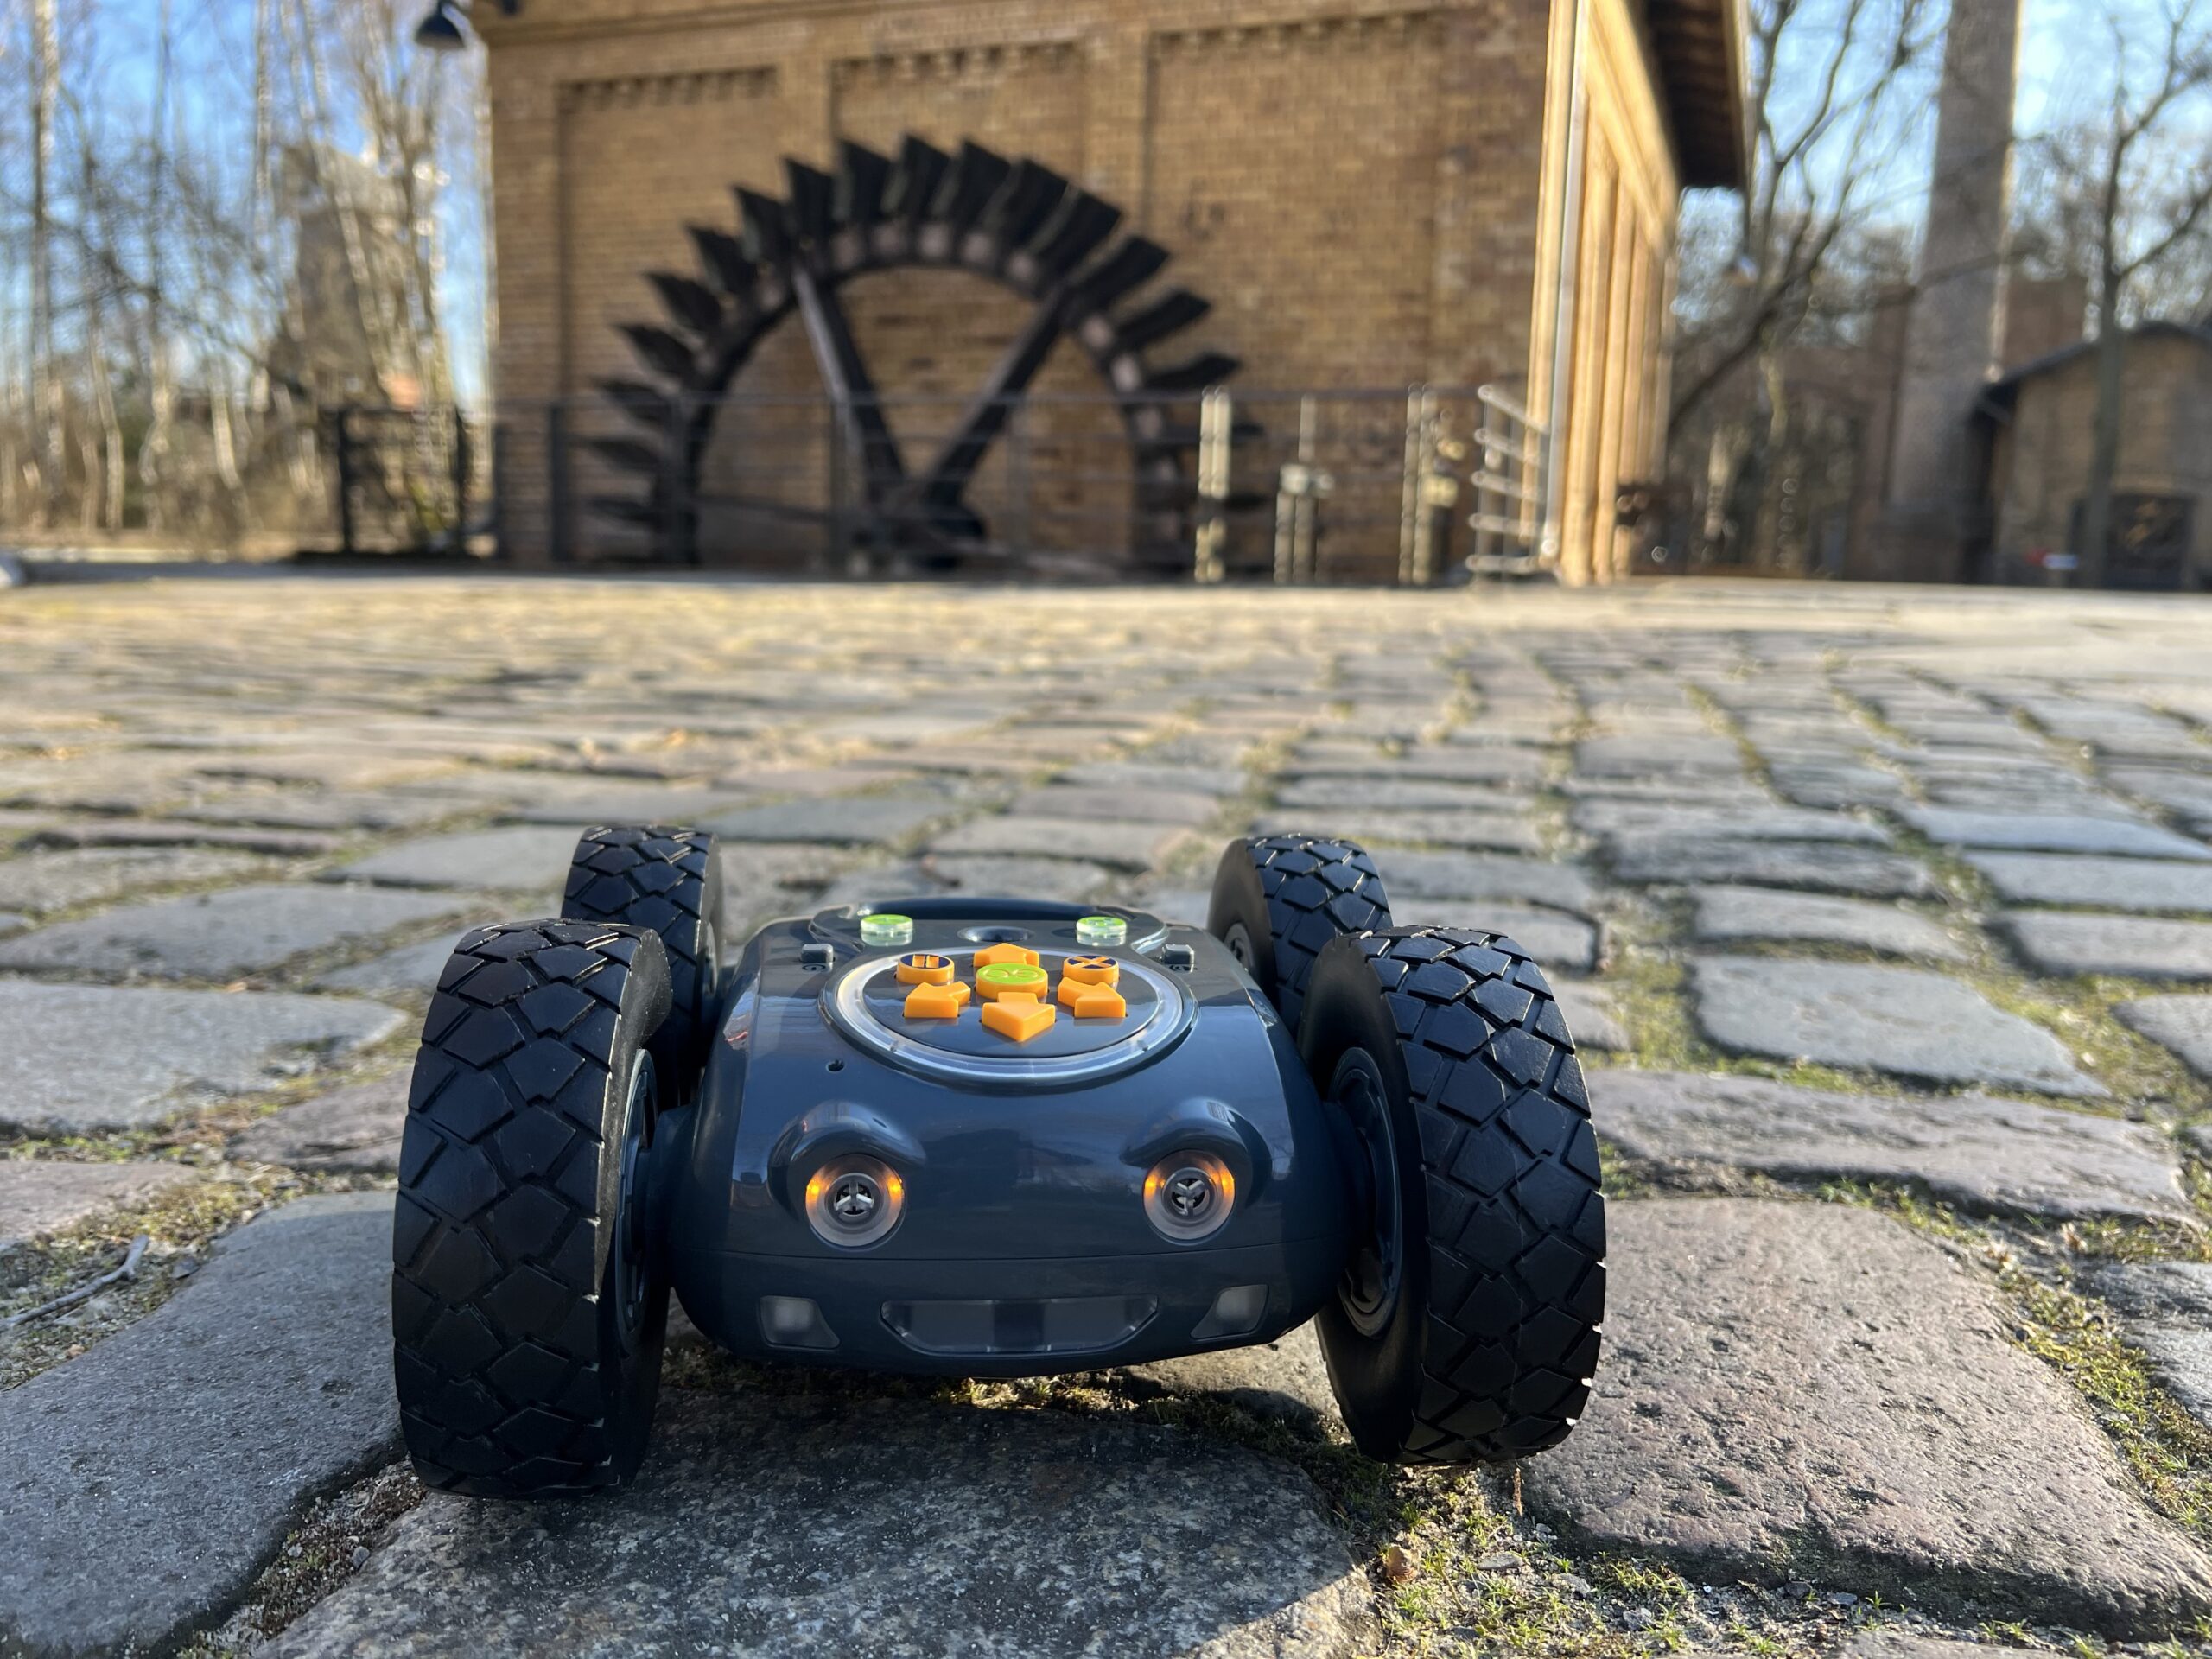 Der Rugged Robot steht auf Kopfsteinpflaster im Hintergrund ist ein Gebäude und ein Mühlenrad zu sehen.